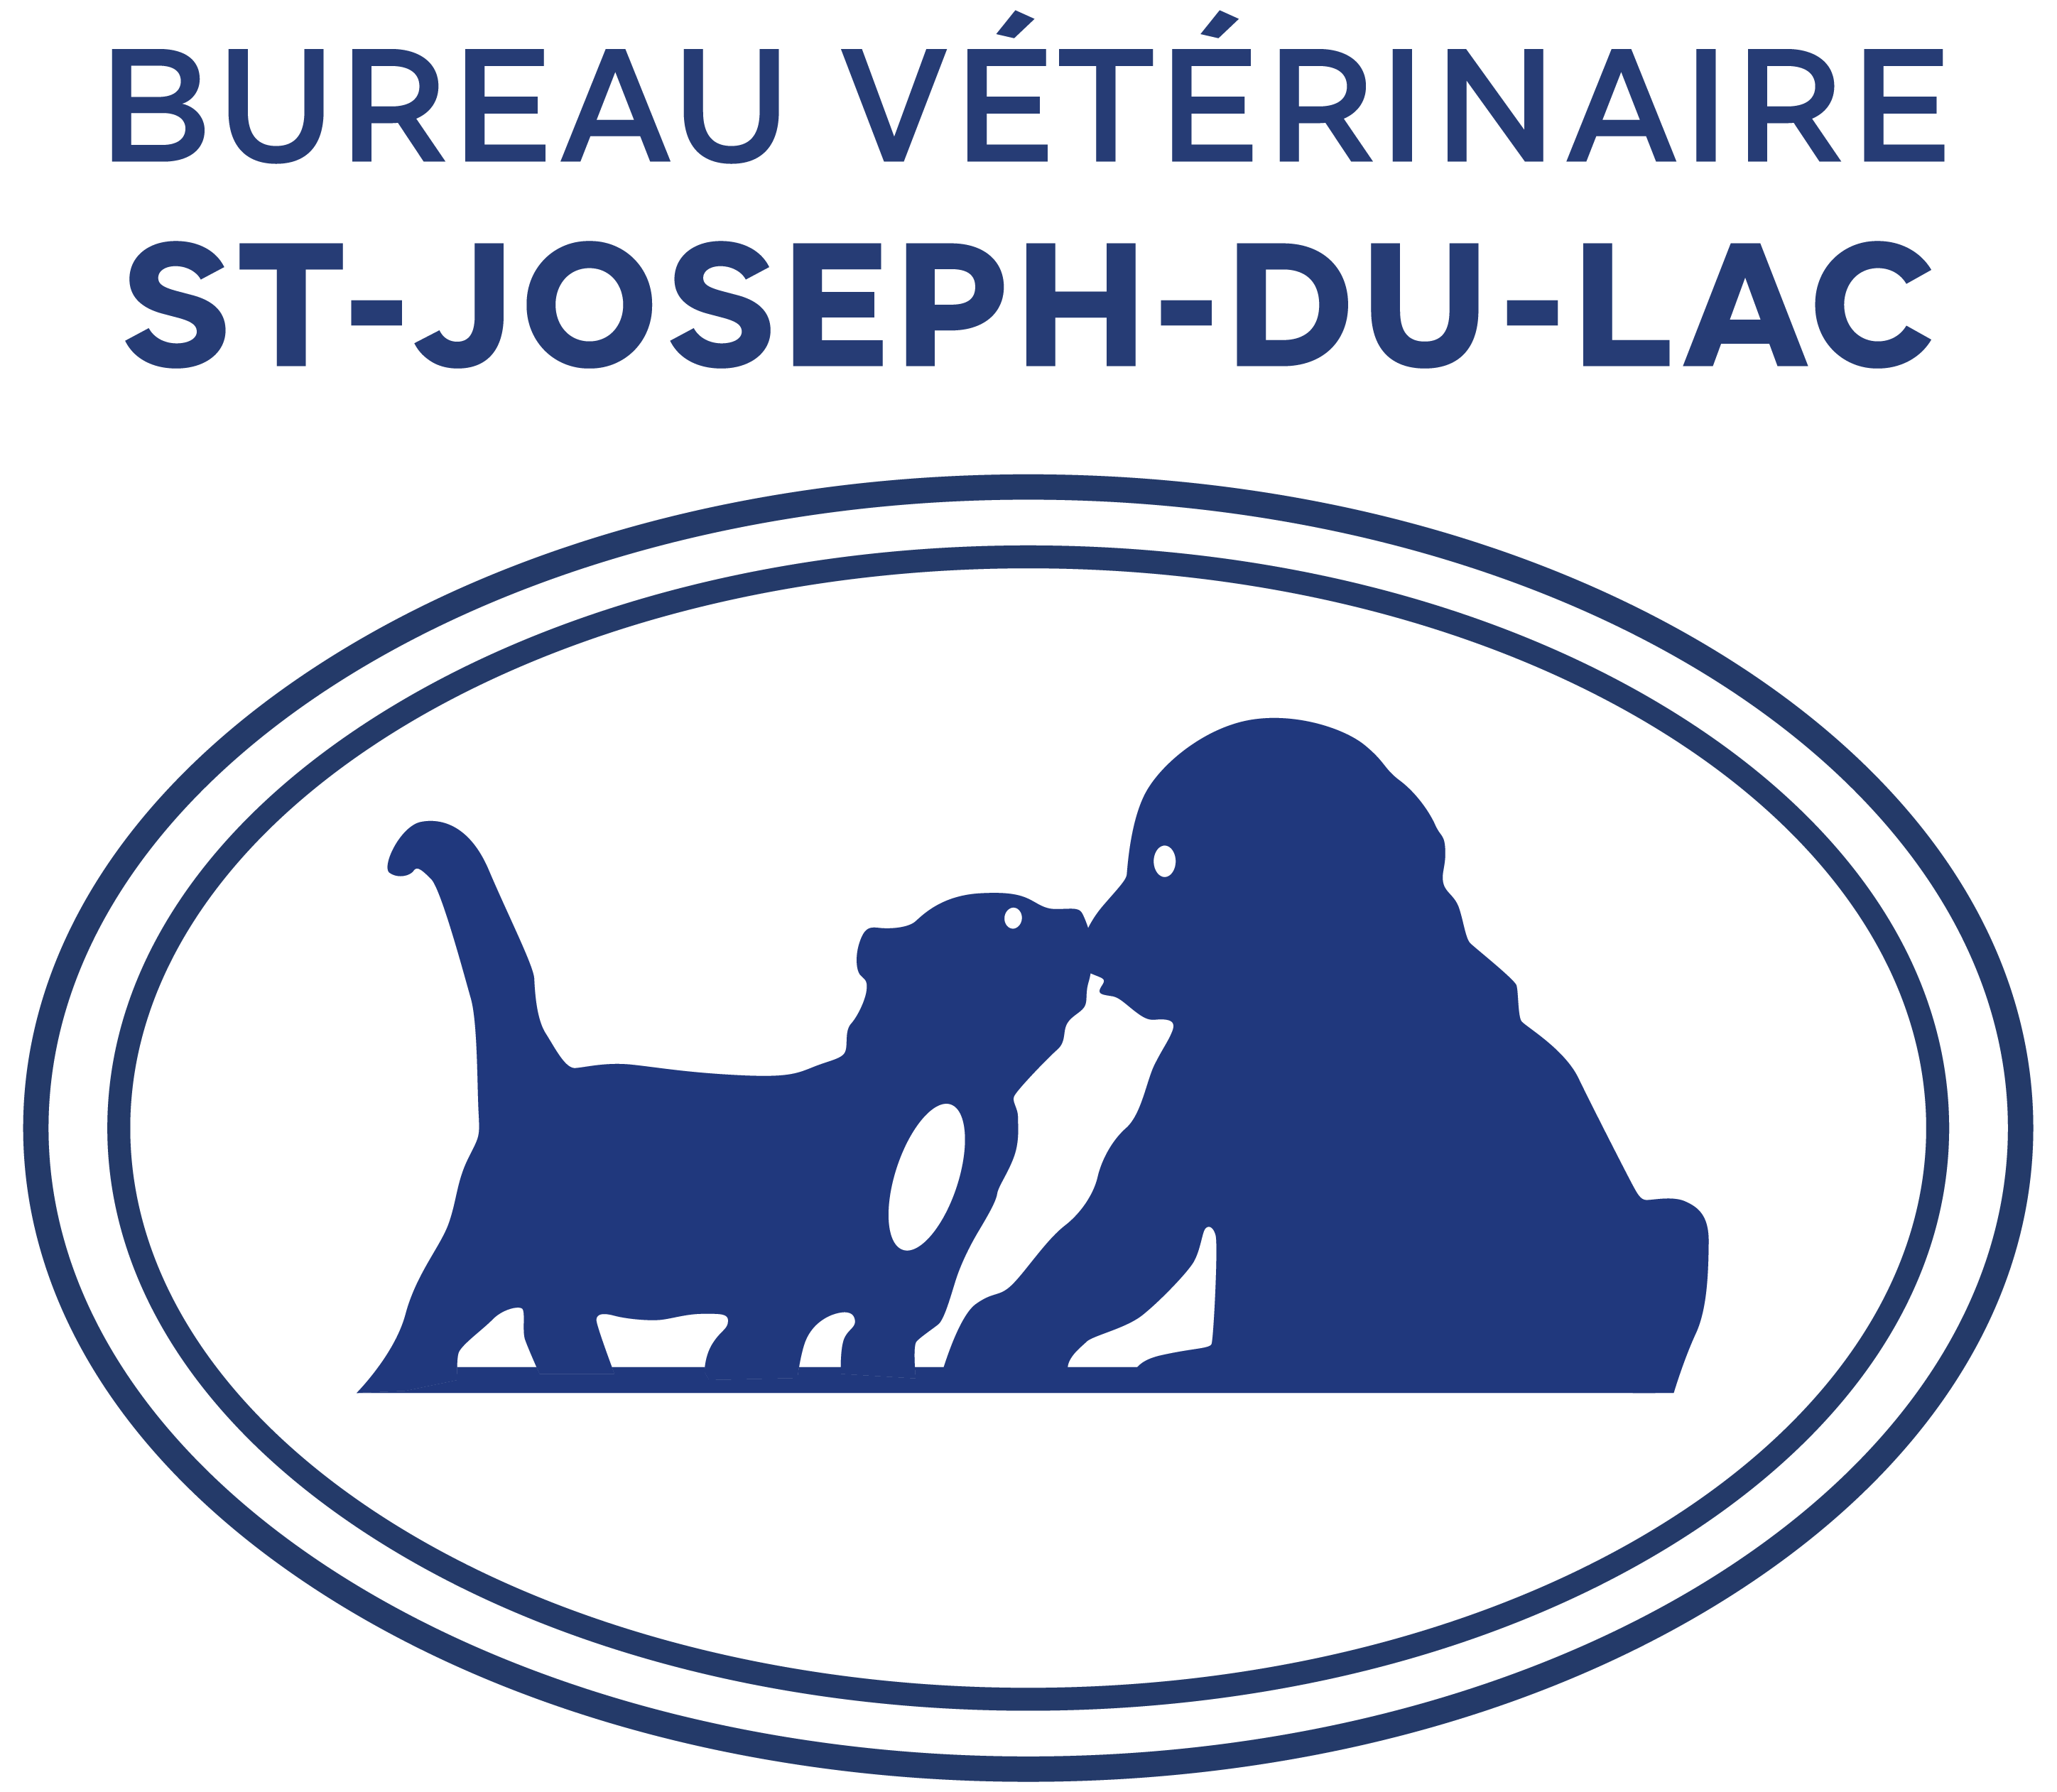 Bureau vétérinaire St-Joseph-du-Lac: Votre vétérinaire à Saint-Joseph-du-Lac, QC